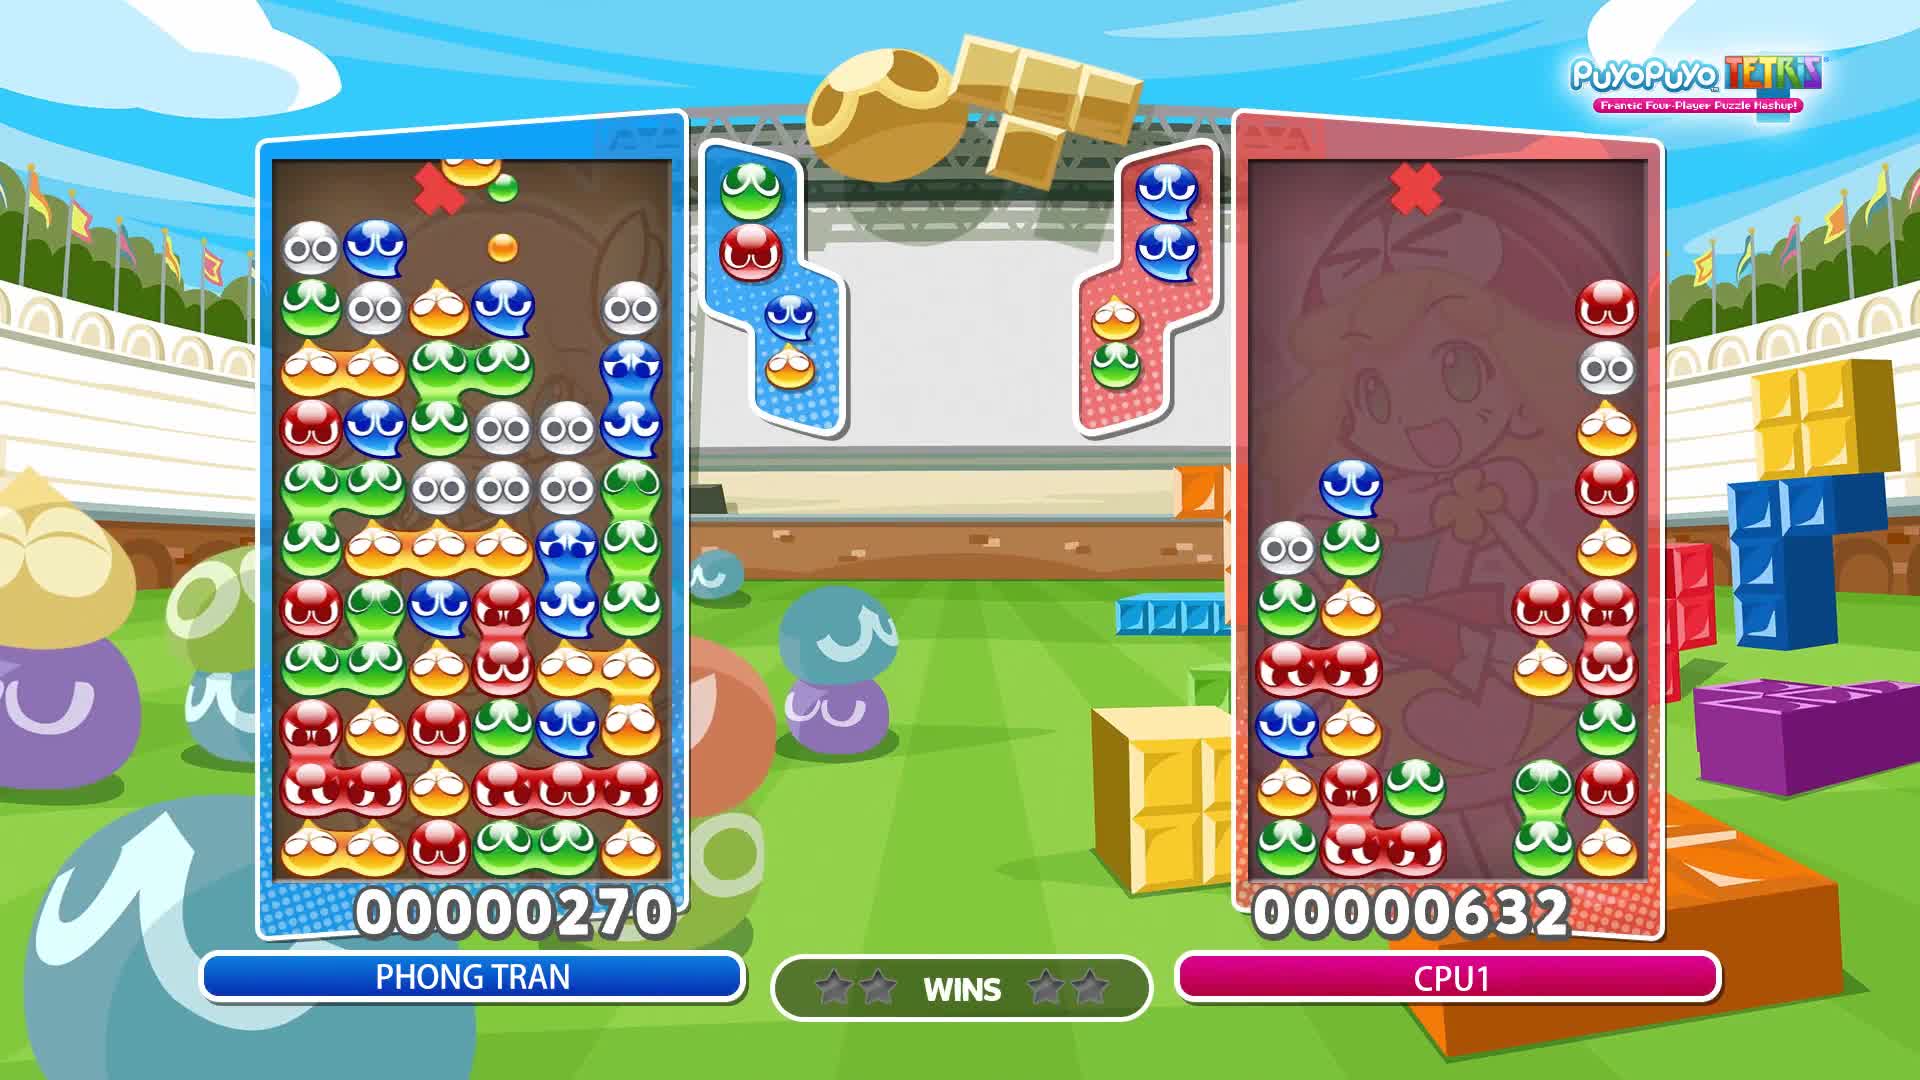 Puyo Puyo Tetris - Garbage Management